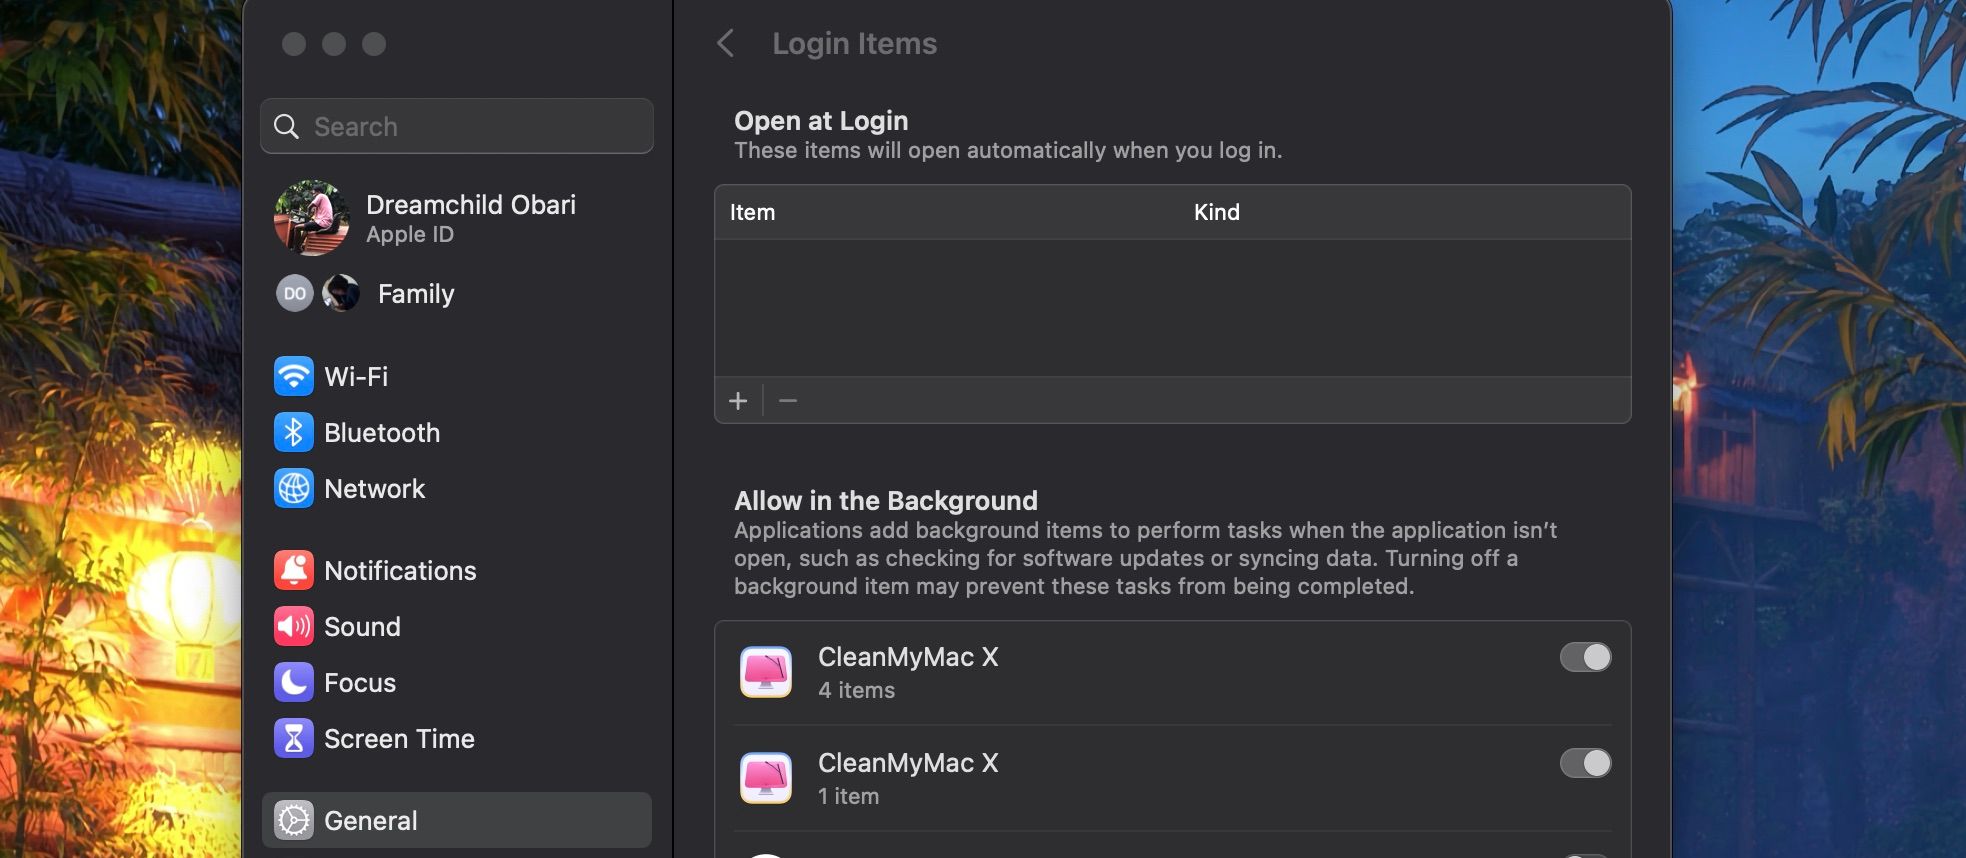 Login Items menu in System Settings